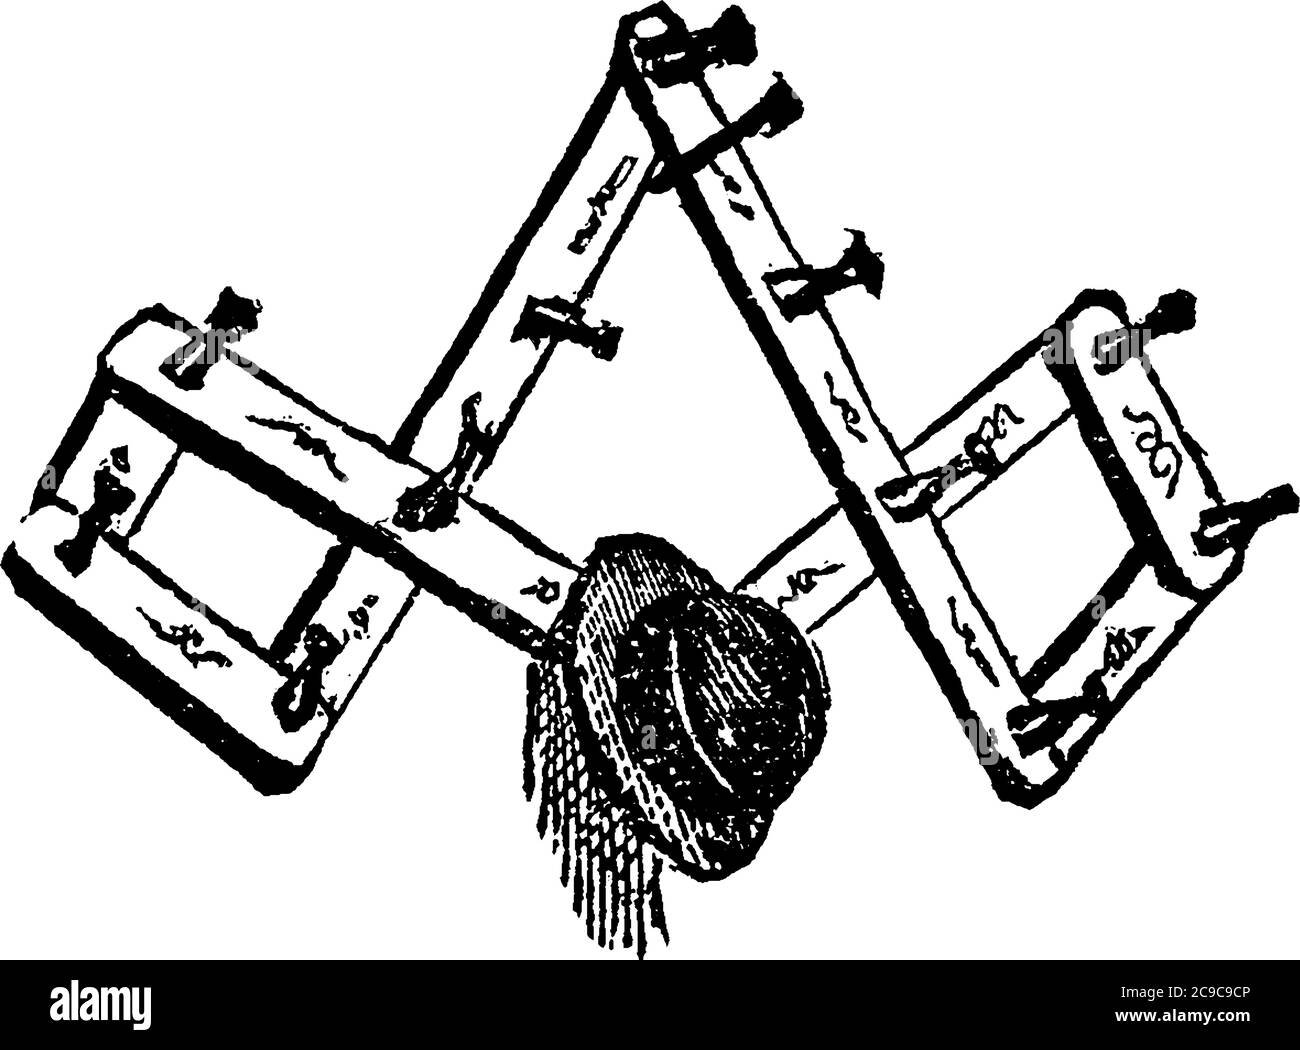 Eine typische Darstellung eines Zahnstangens, ein Rahmenwerk mit Stiften oder Haken, an denen Hüte, Kleidungsstücke, Kleider usw., Vintage-Linienzeichnung oder Gravur hängen Stock Vektor